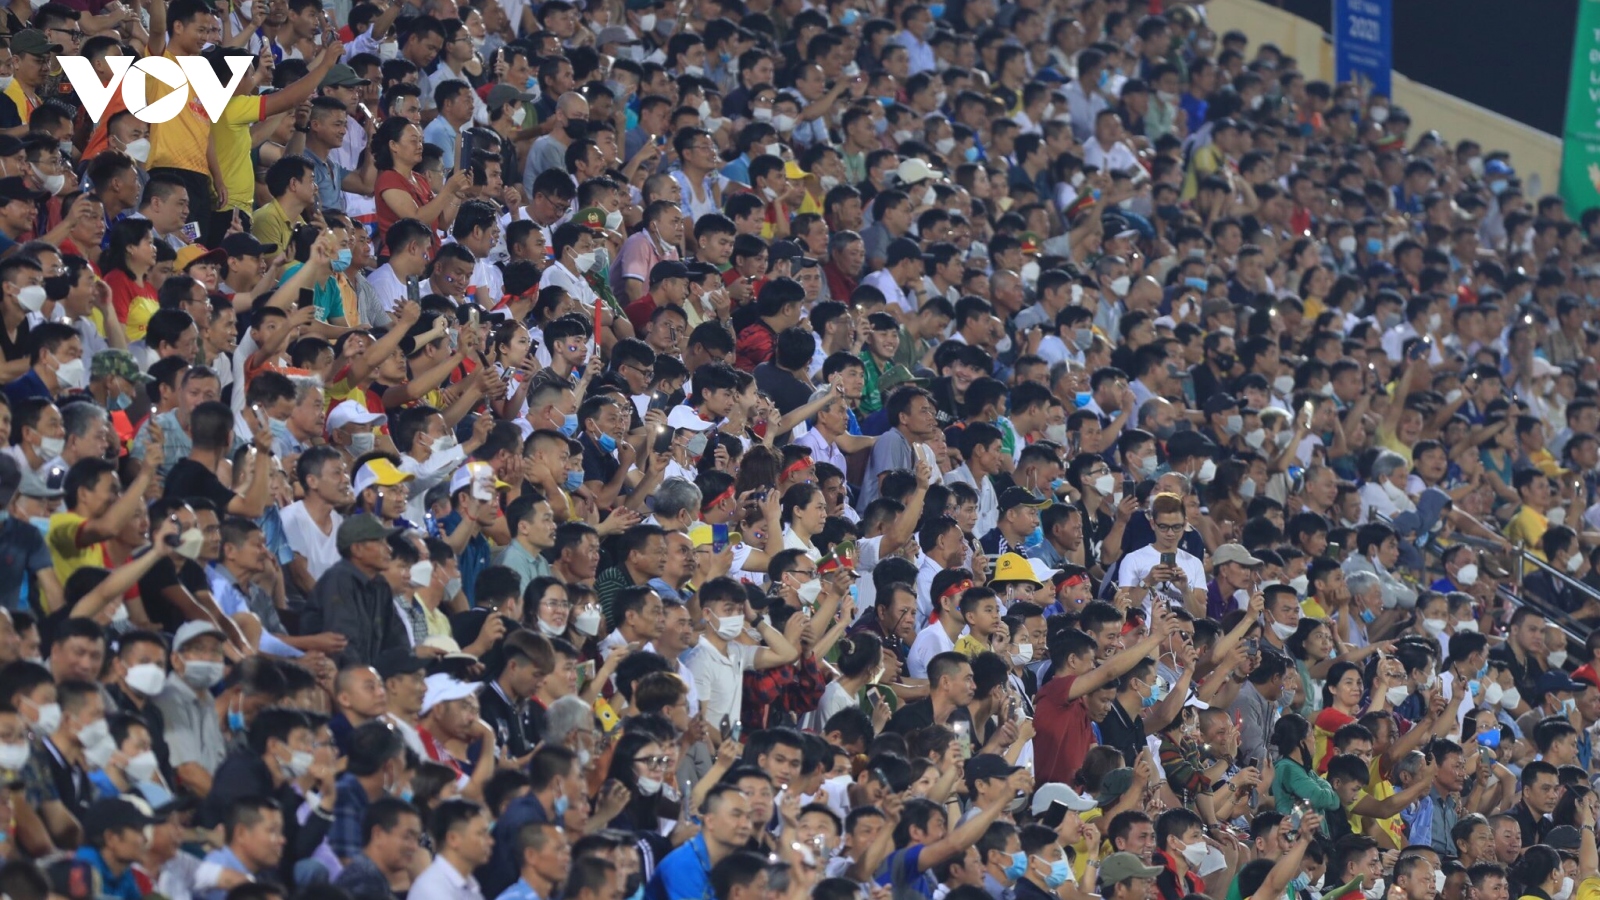 Sân Thiên Trường đông nghịt dù không có đội nhà: "Khán giả Việt Nam thật tuyệt vời"